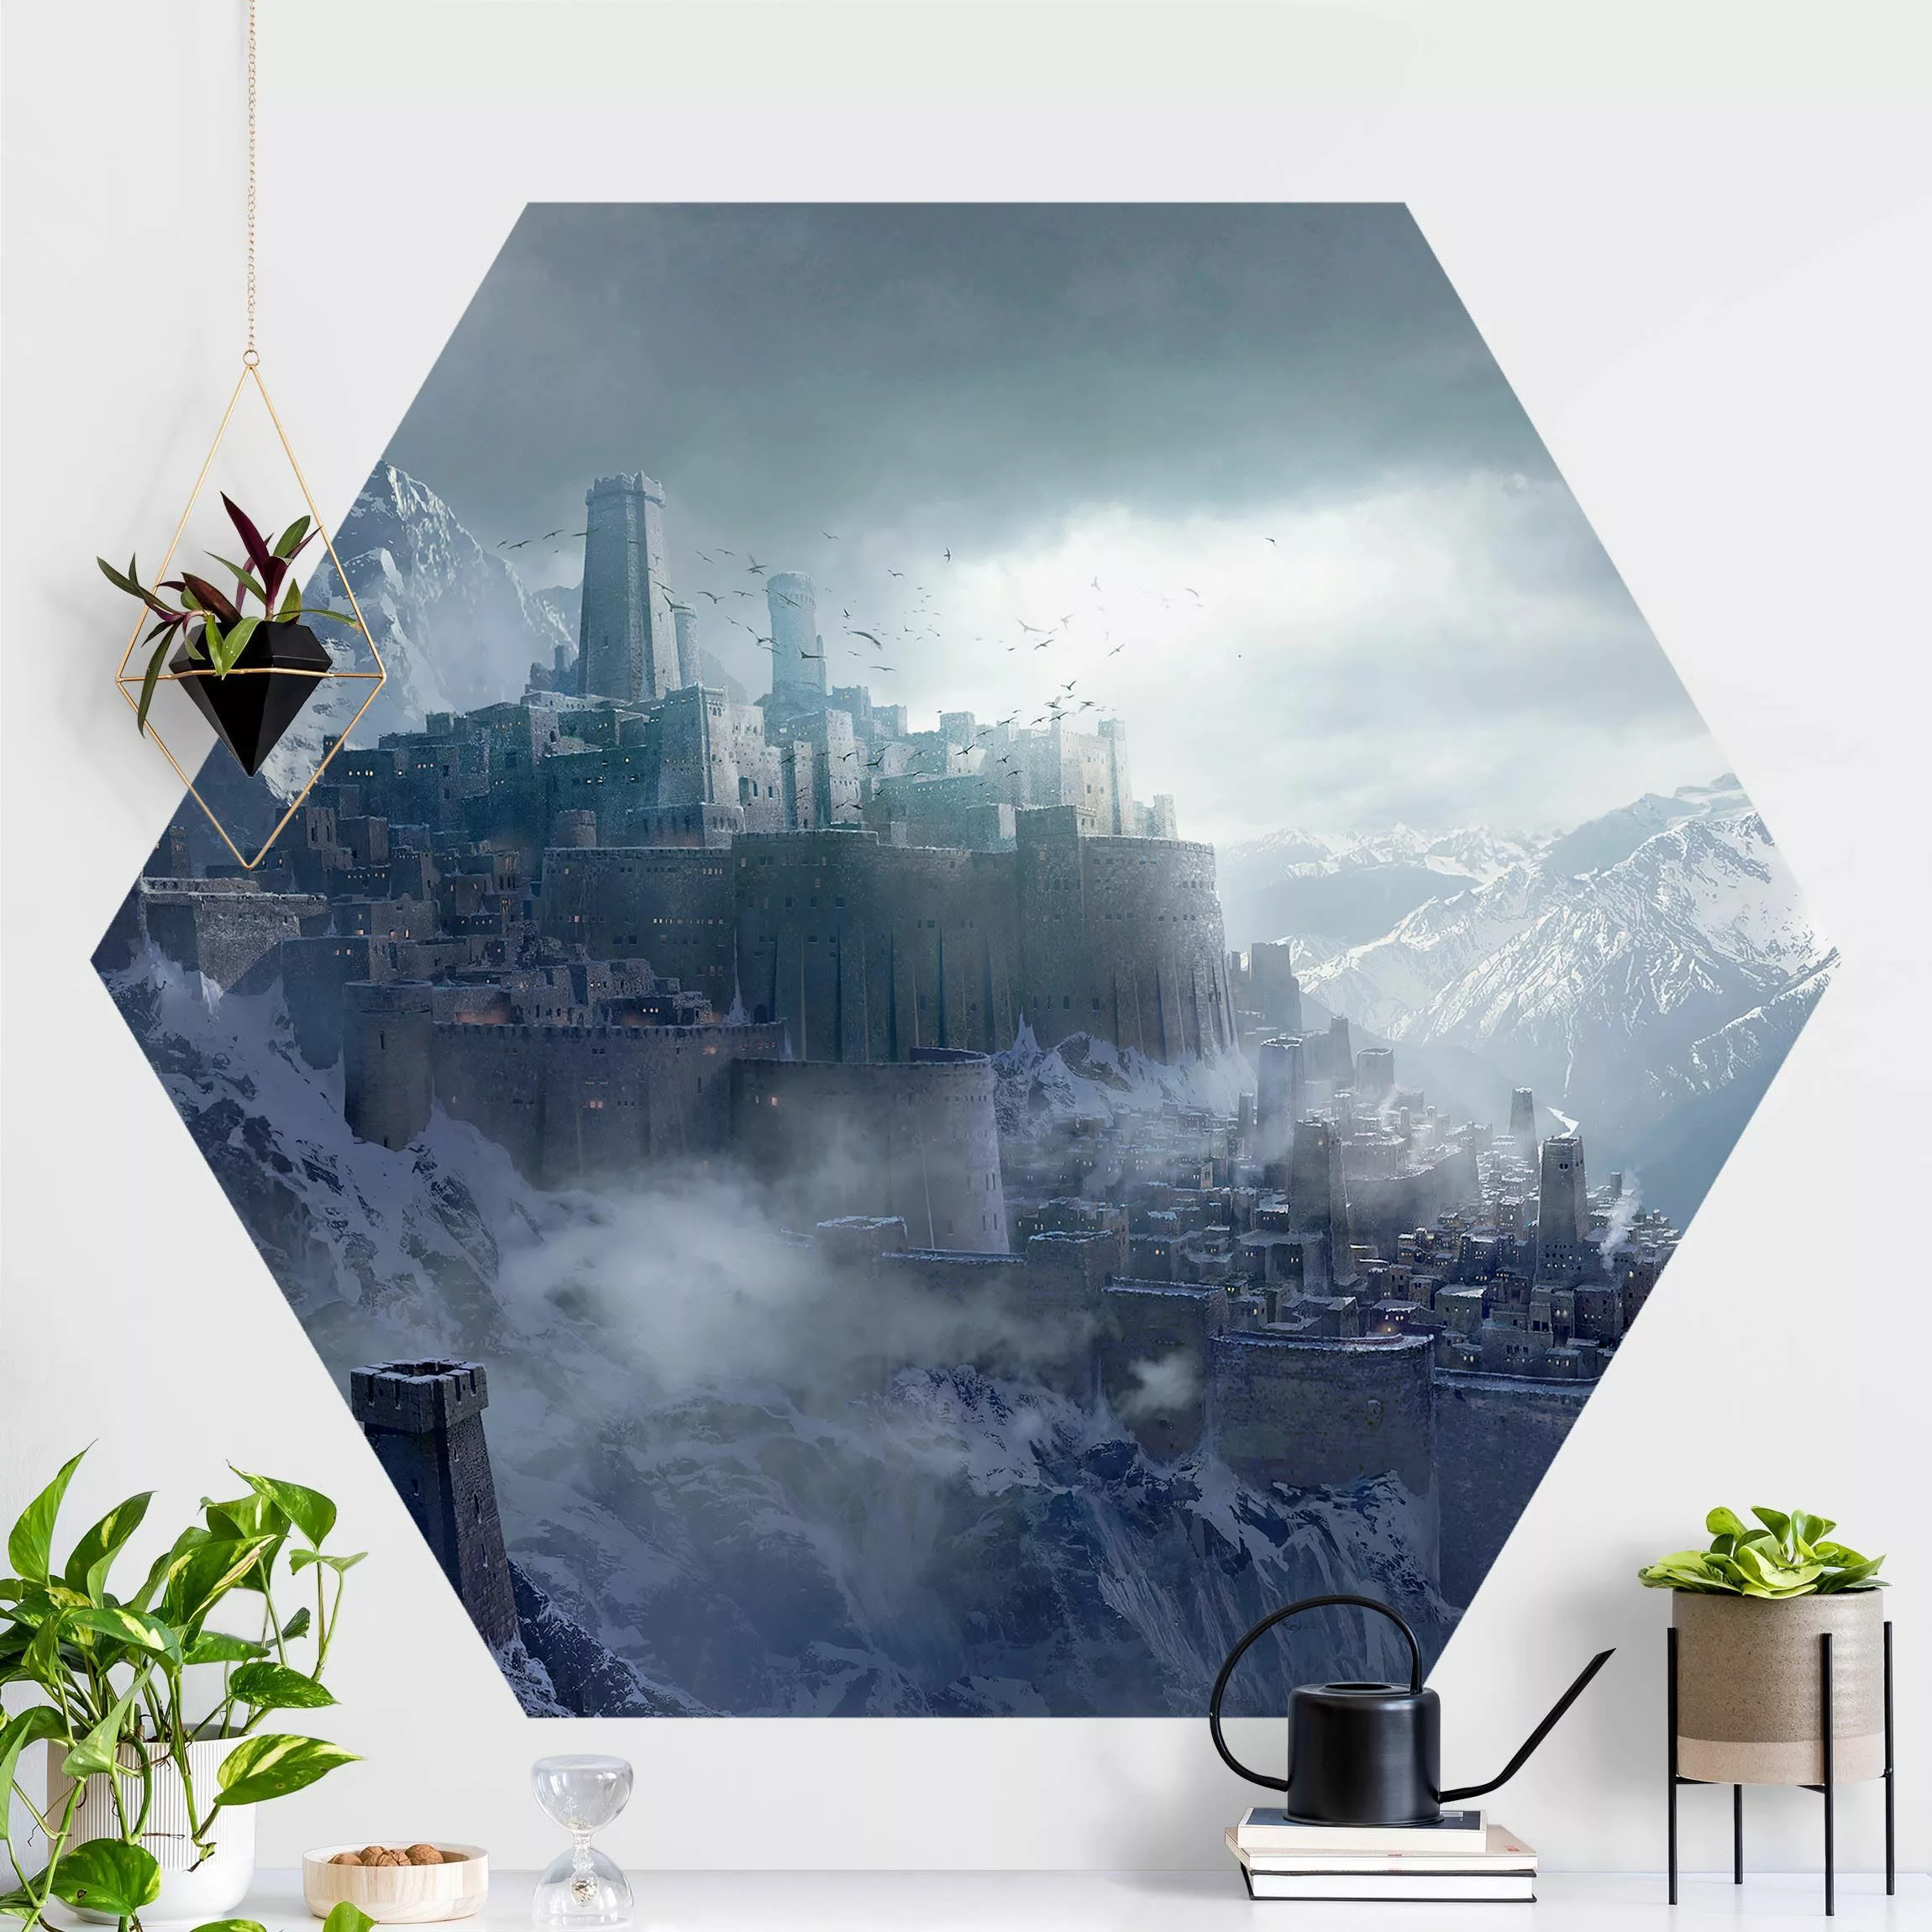 Hexagon Mustertapete selbstklebend Phantastische Festung in den Bergen günstig online kaufen